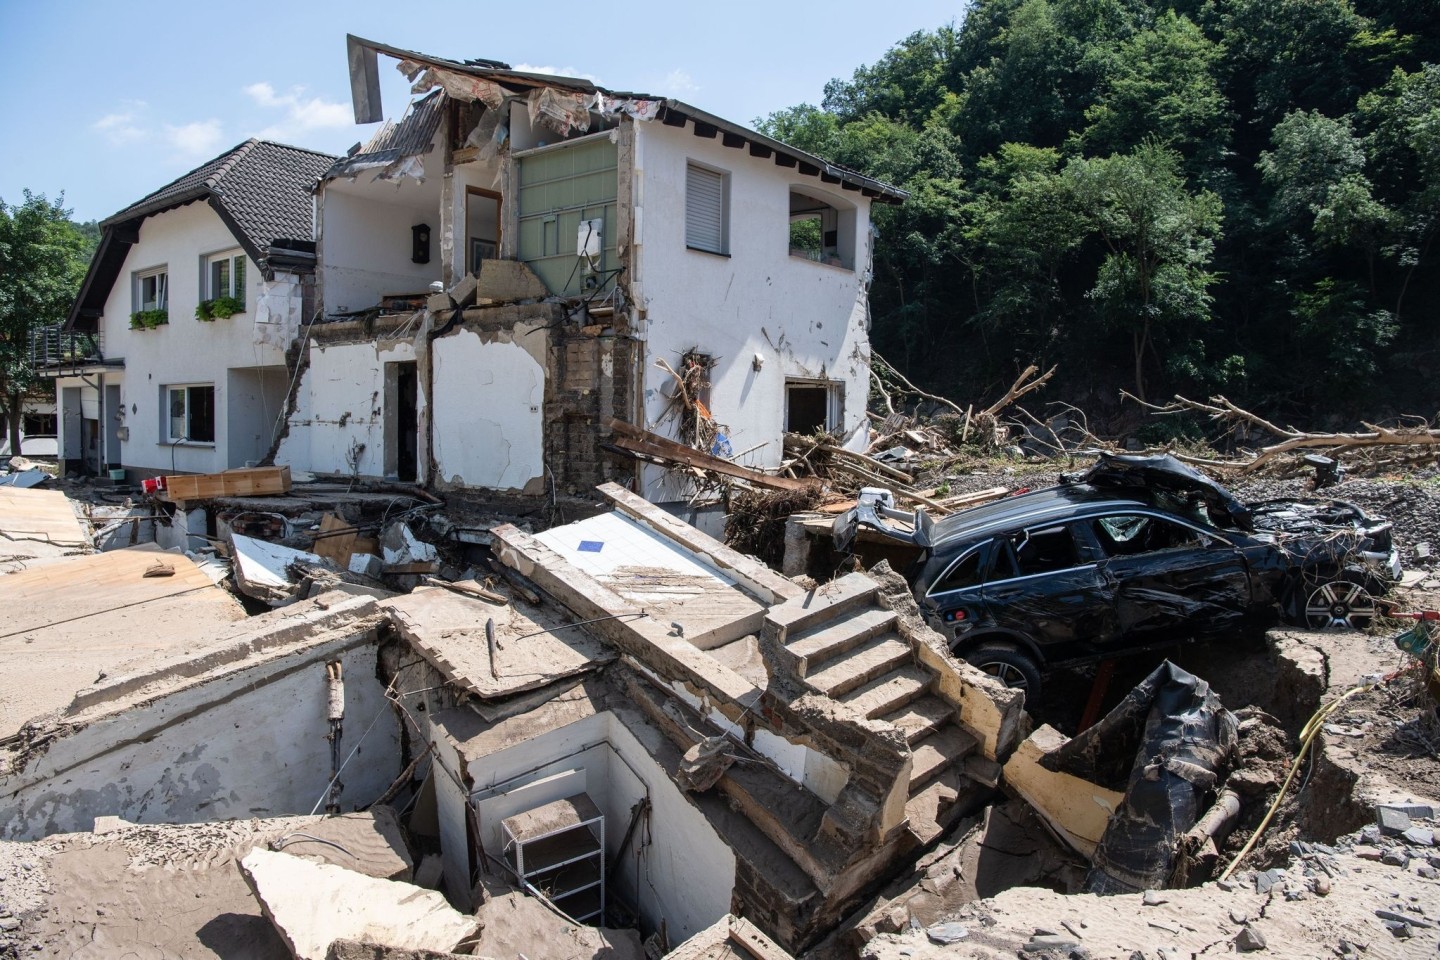 Ein komplett zerstörtes Haus in Marienthal im Ahrtal. Das kleine Dorf wurde weitestgehend zerstört.